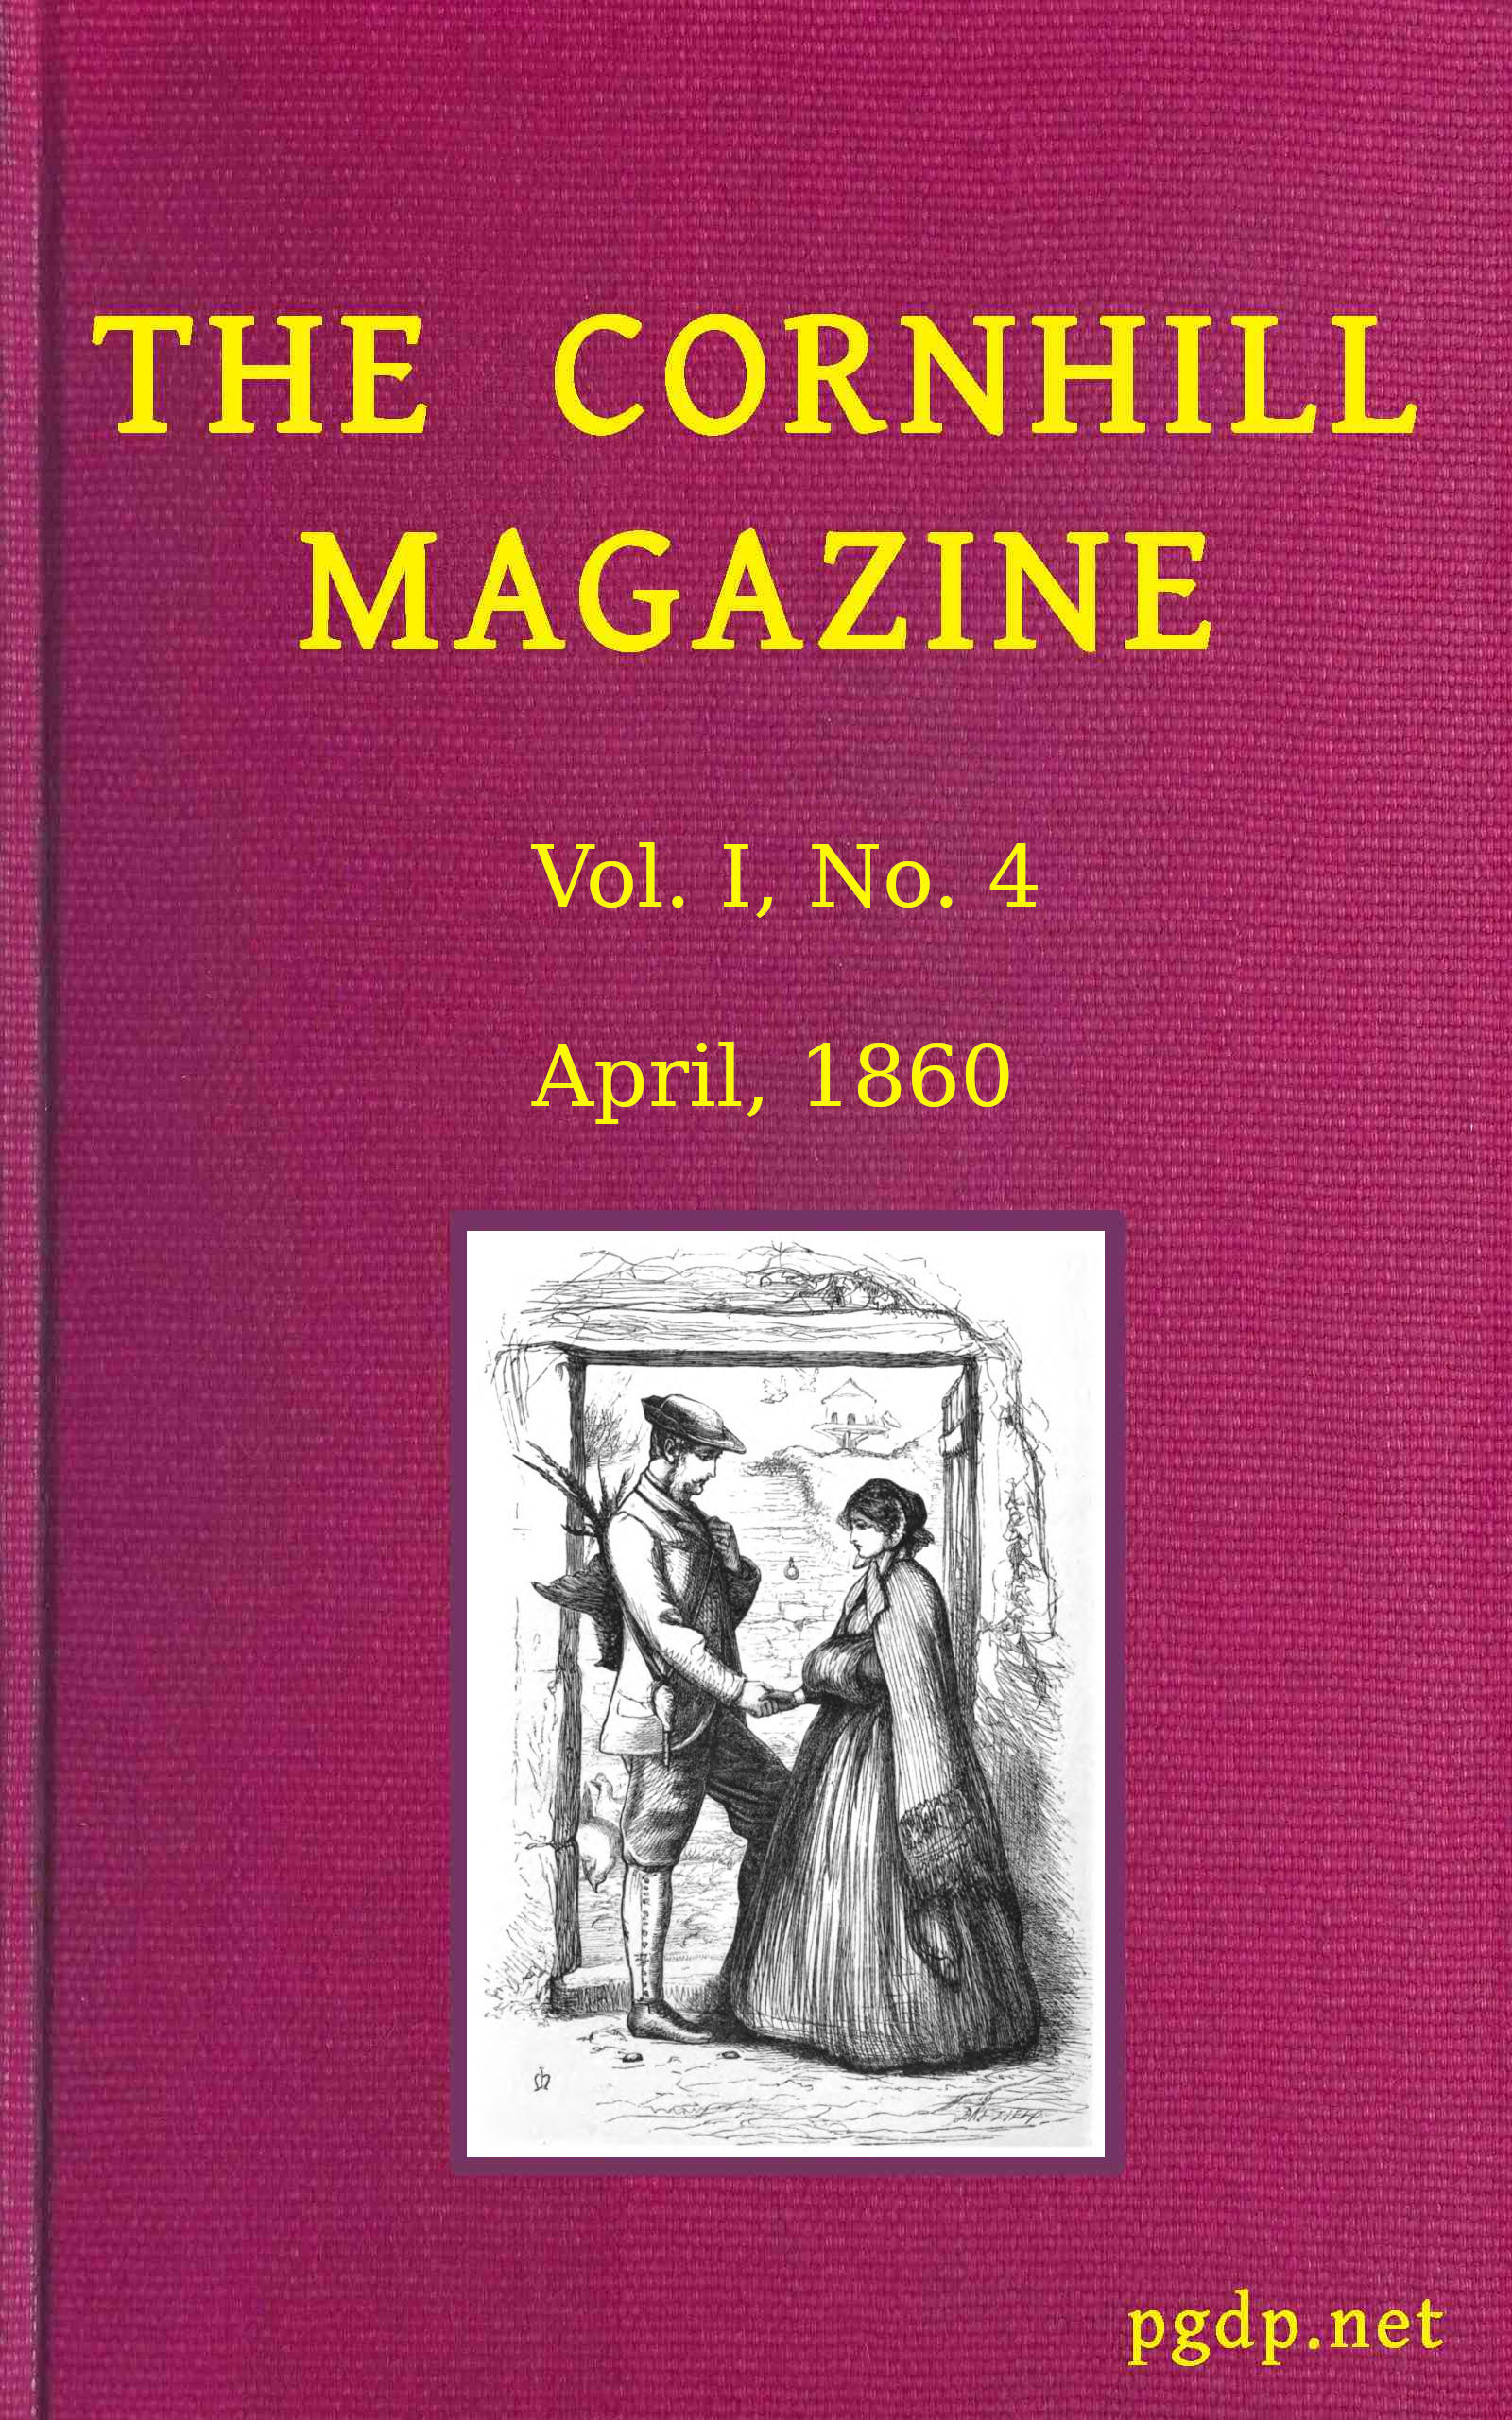 The Cornhill Magazine (Vol. I, No. 4, April 1860)